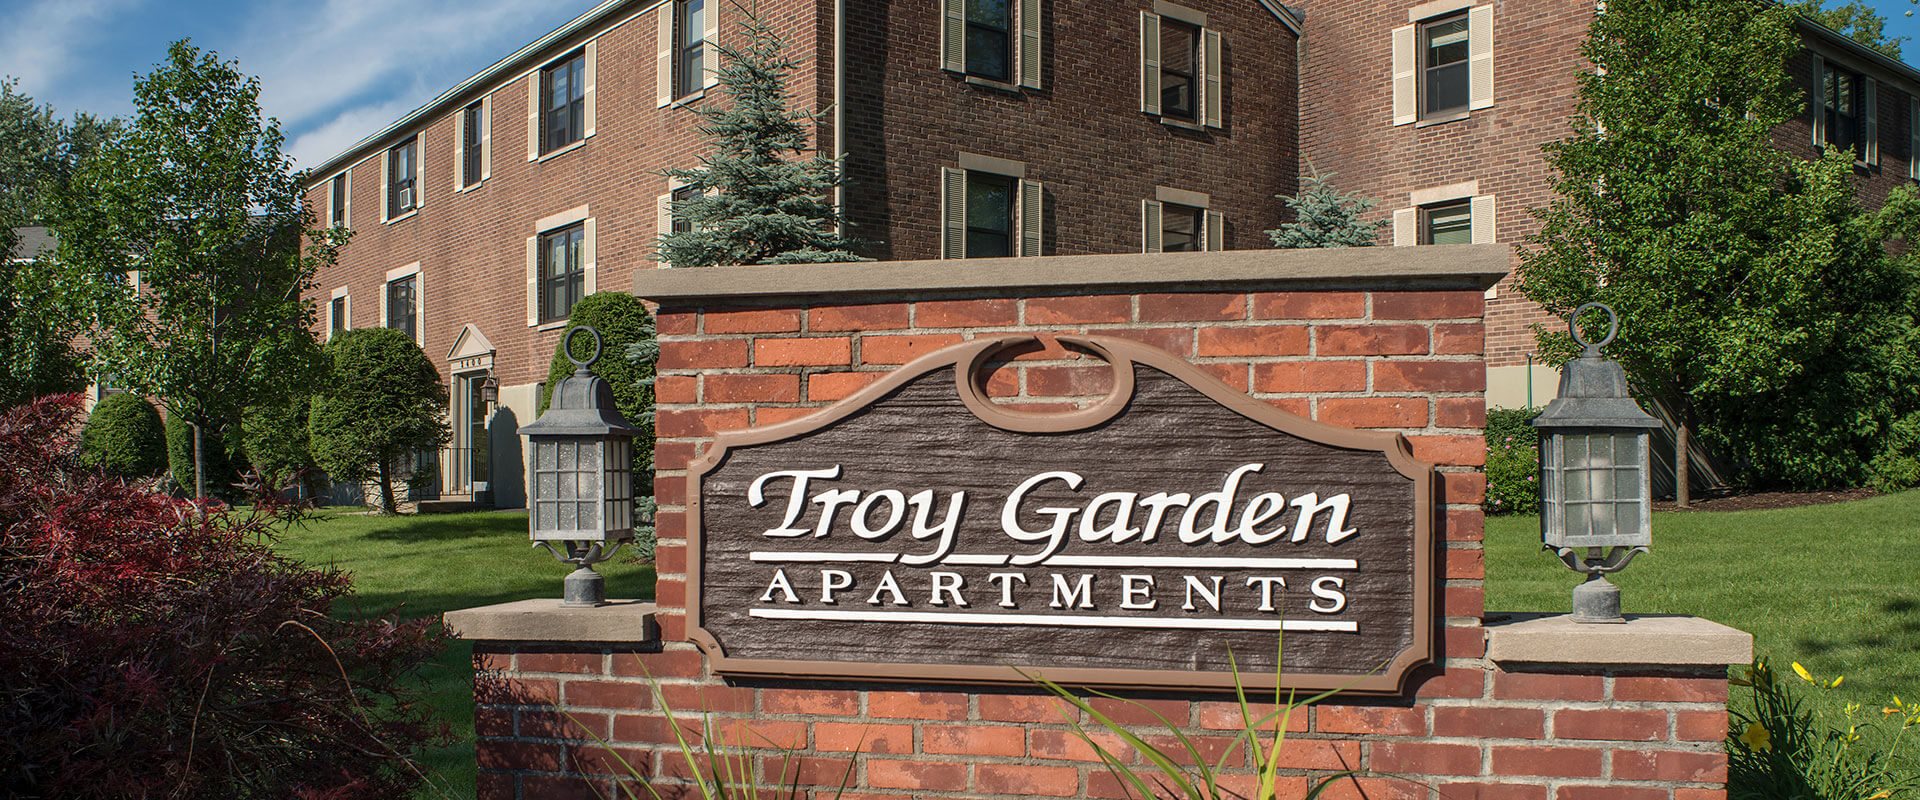 Troy Gardens Apartments - Troy Ny 12180